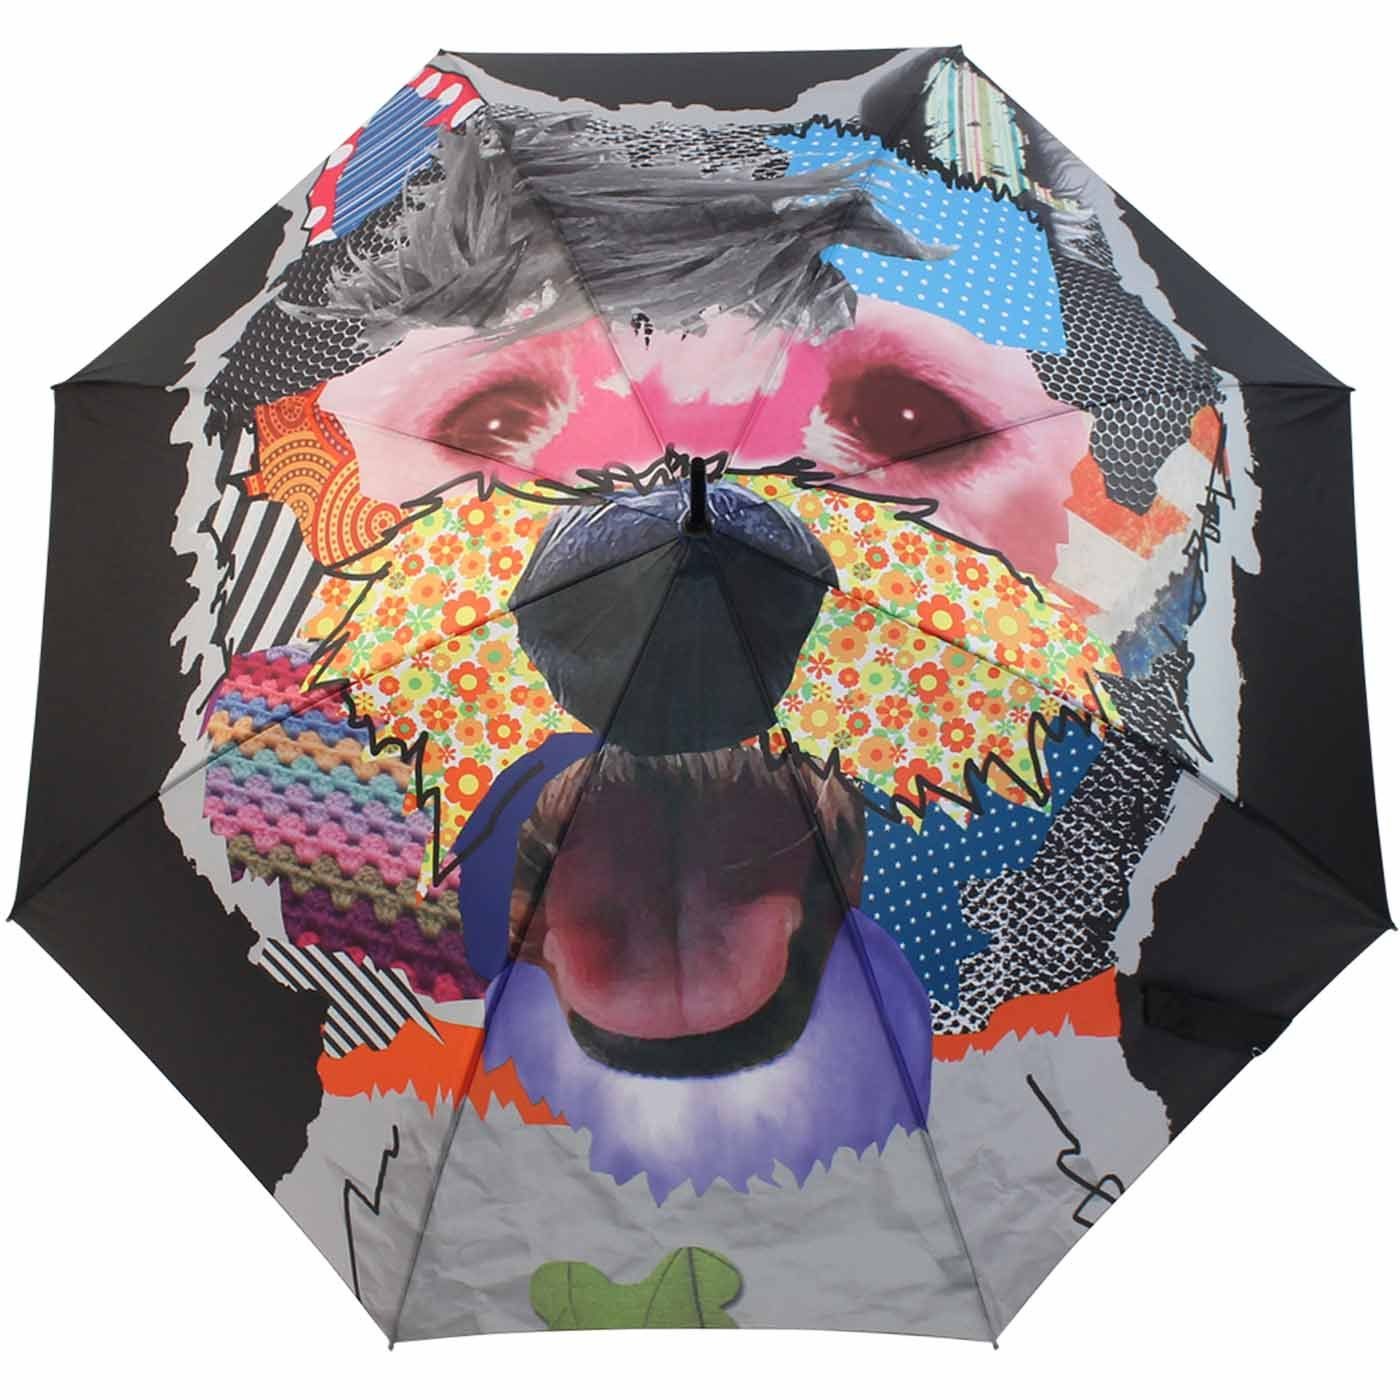 doppler® Langregenschirm edler Regenschirm mit Auf-Automatik modern Art,  auffälliger Druck mit formschönem Griff, Maße: Regenschirm geöffnet 104 cm,  Schirm geschlossen 89 cm groß